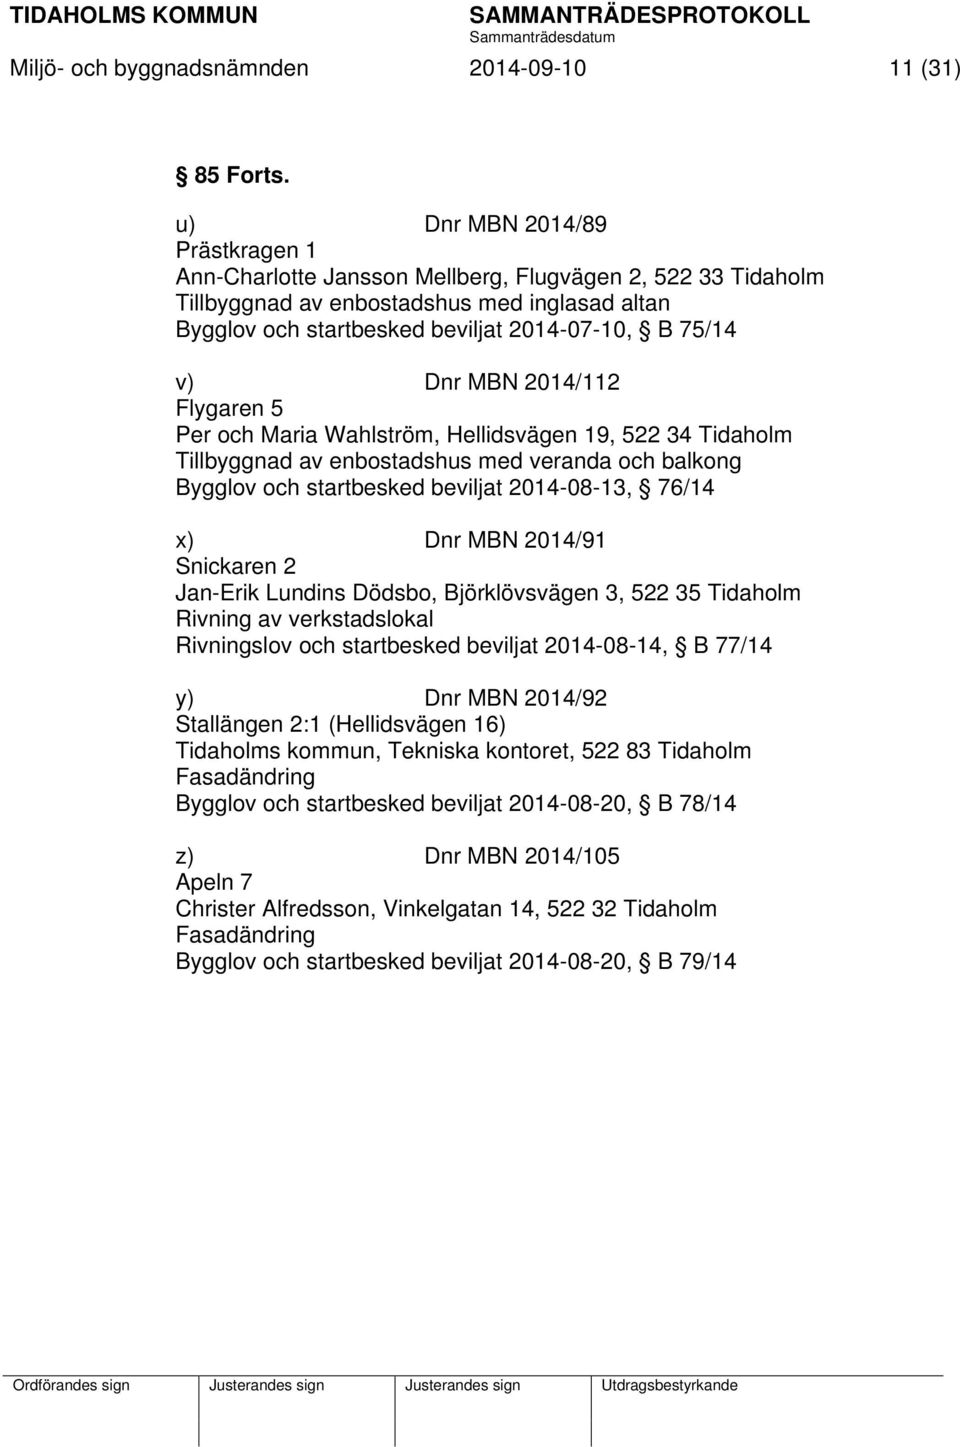 Dnr MBN 2014/112 Flygaren 5 Per och Maria Wahlström, Hellidsvägen 19, 522 34 Tidaholm Tillbyggnad av enbostadshus med veranda och balkong Bygglov och startbesked beviljat 2014-08-13, 76/14 x) Dnr MBN